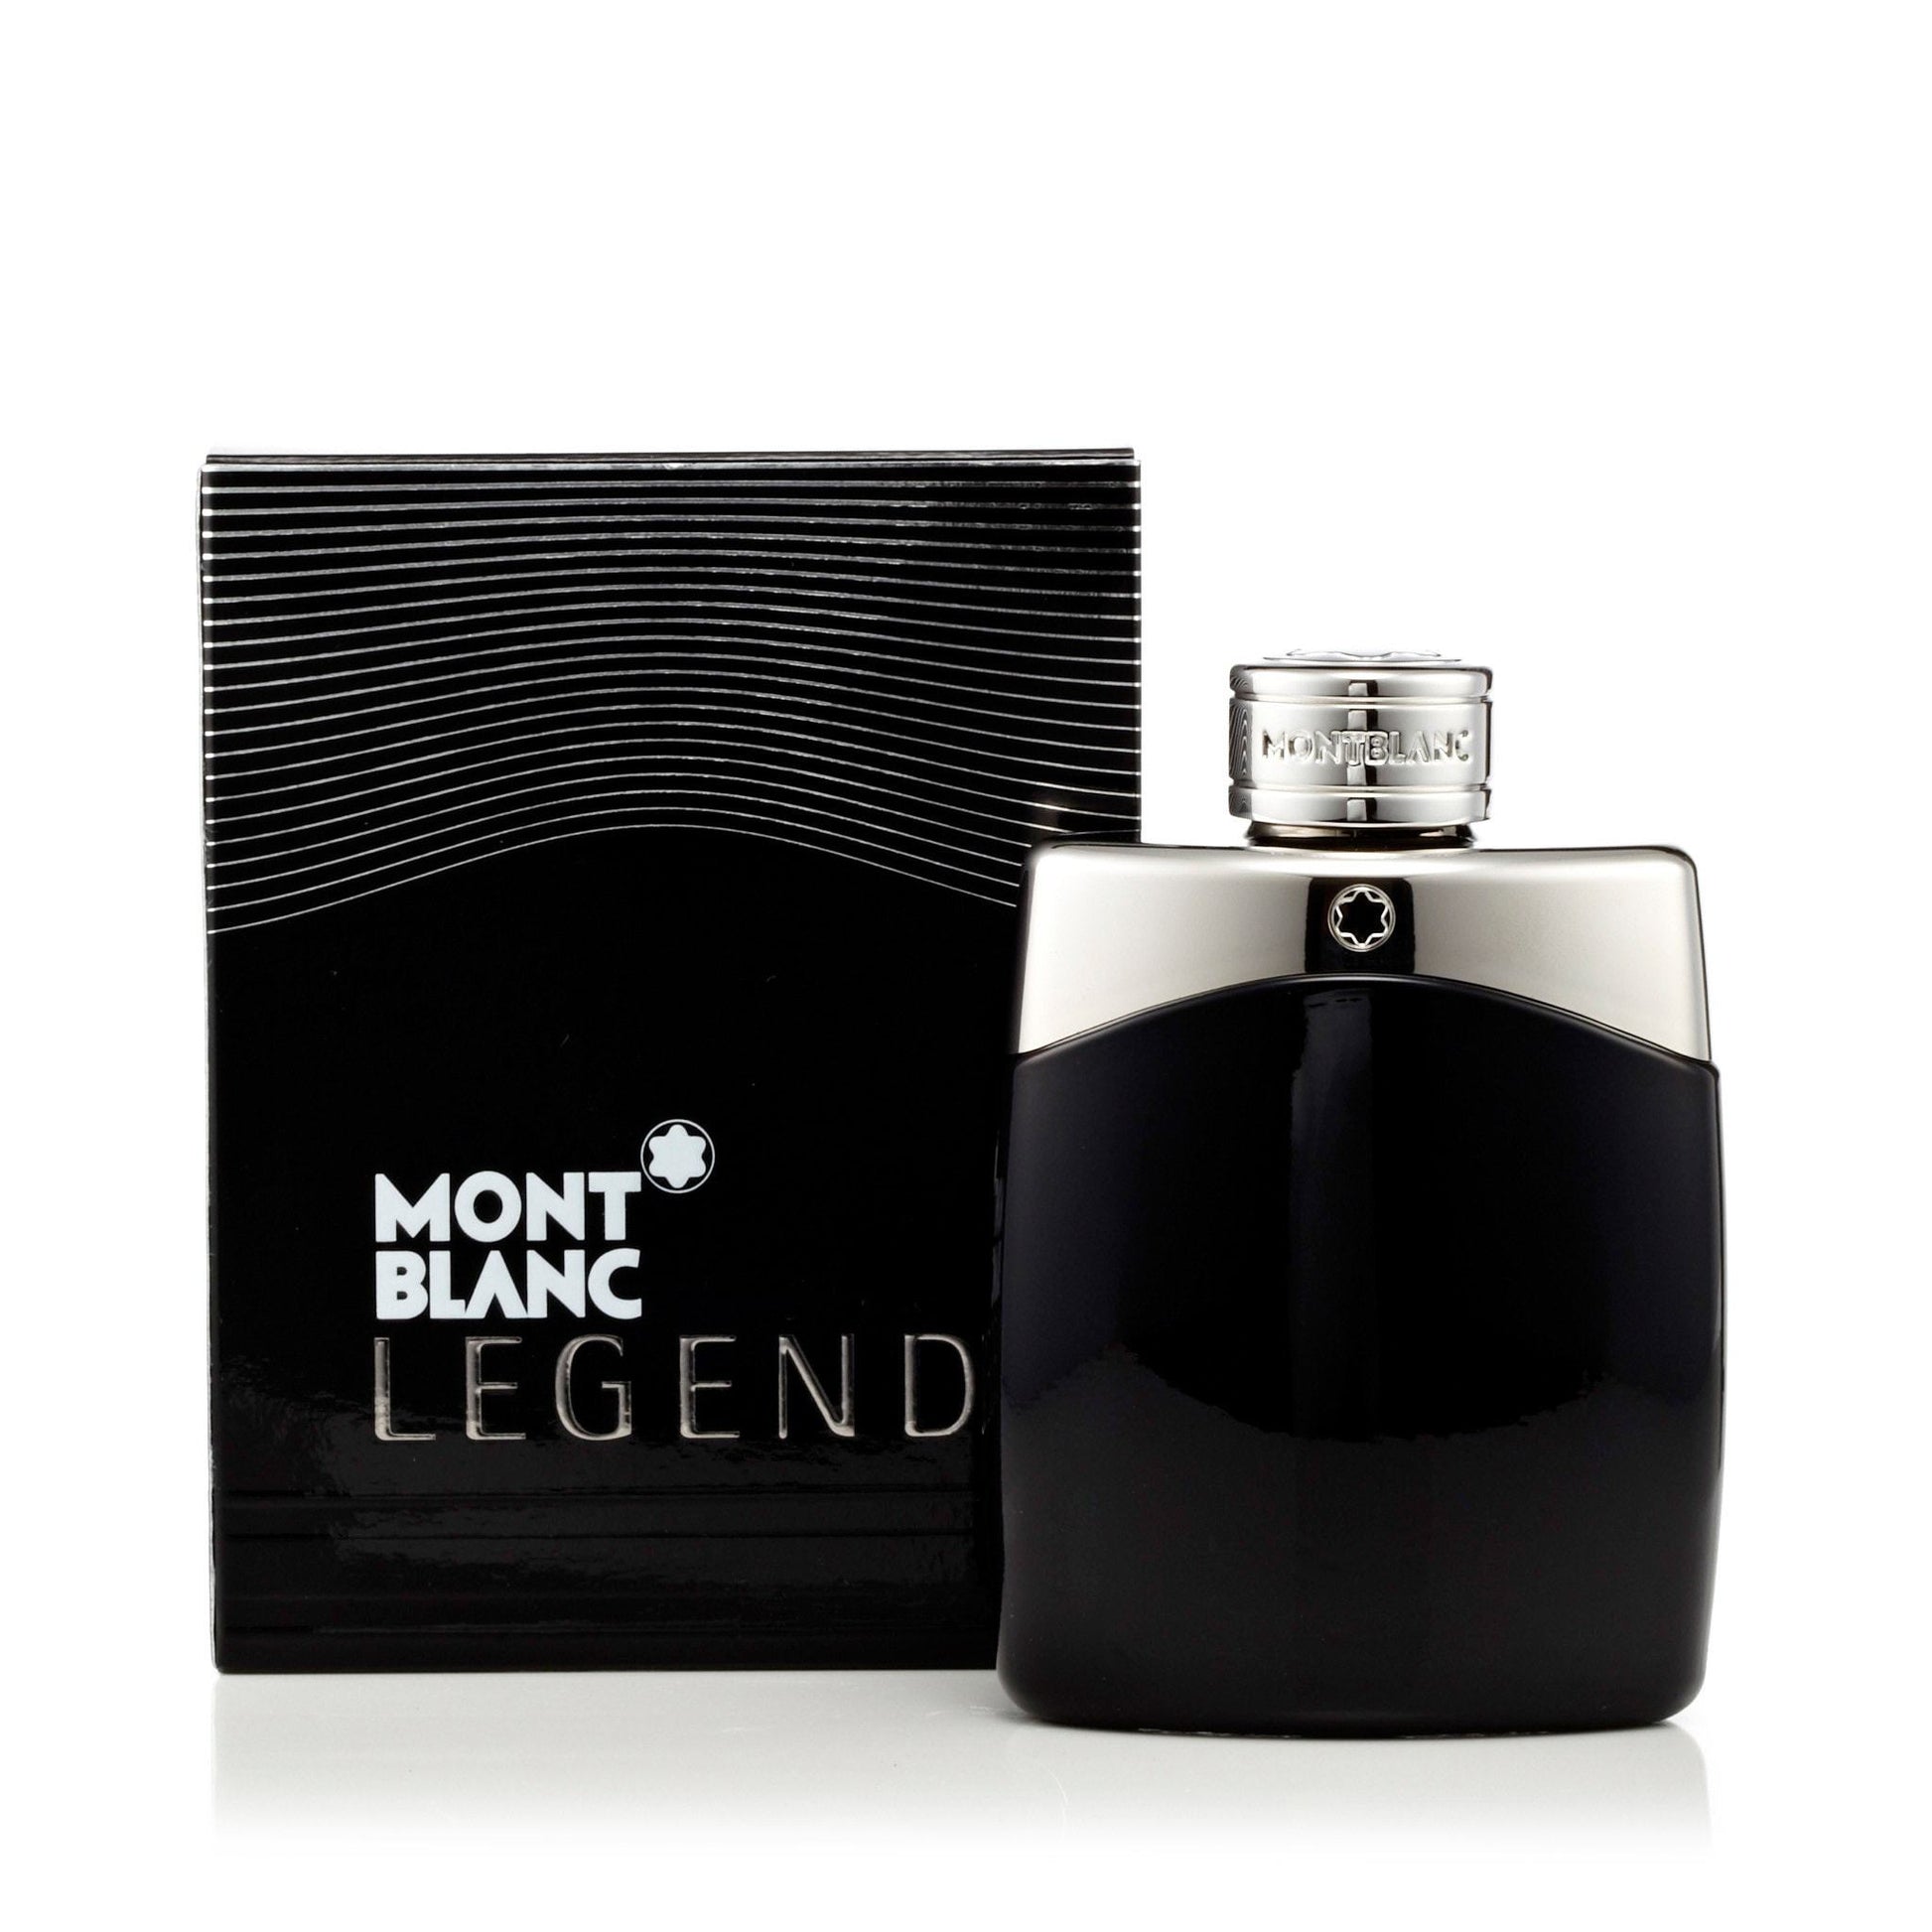 Legend Eau de Toilette Spray for Men by Mont Blanc, Product image 9